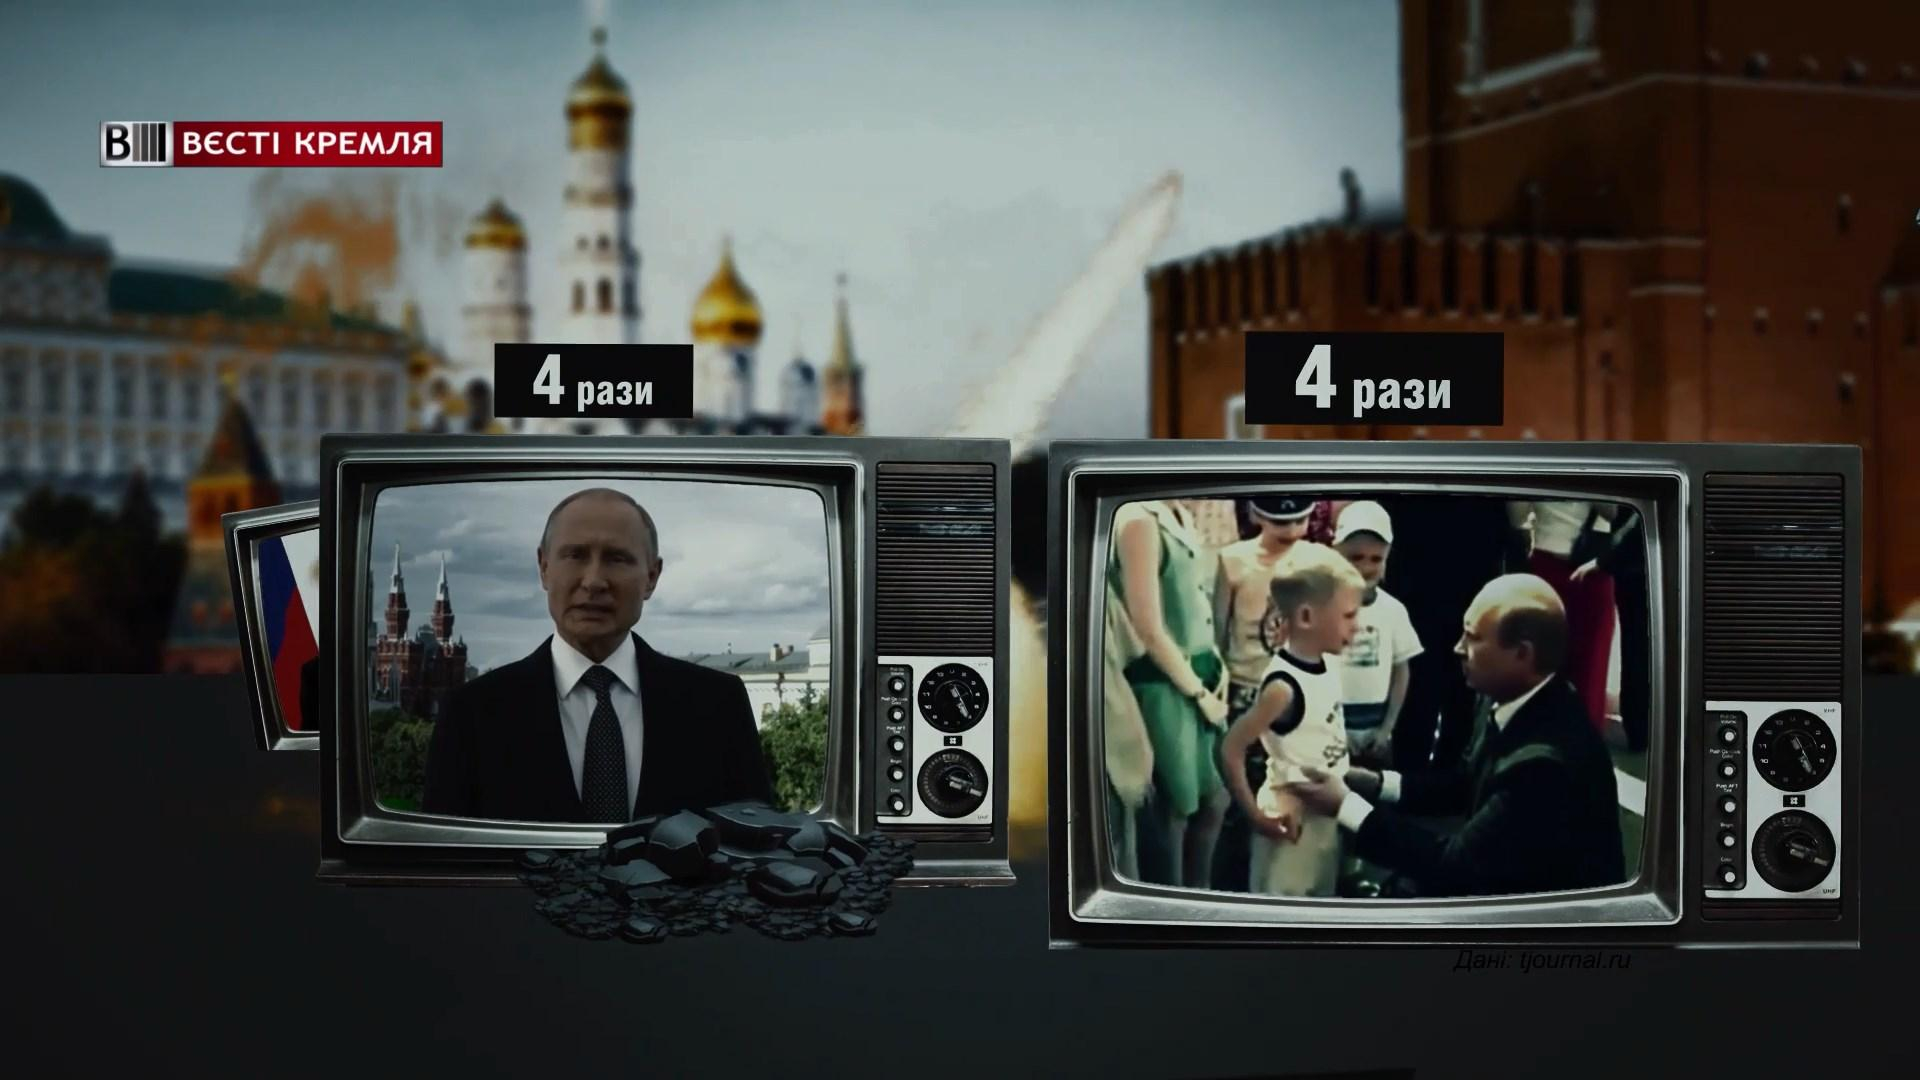 Скільки відеозвернень здійснив Путін під час президентського правління: приголомшлива цифра